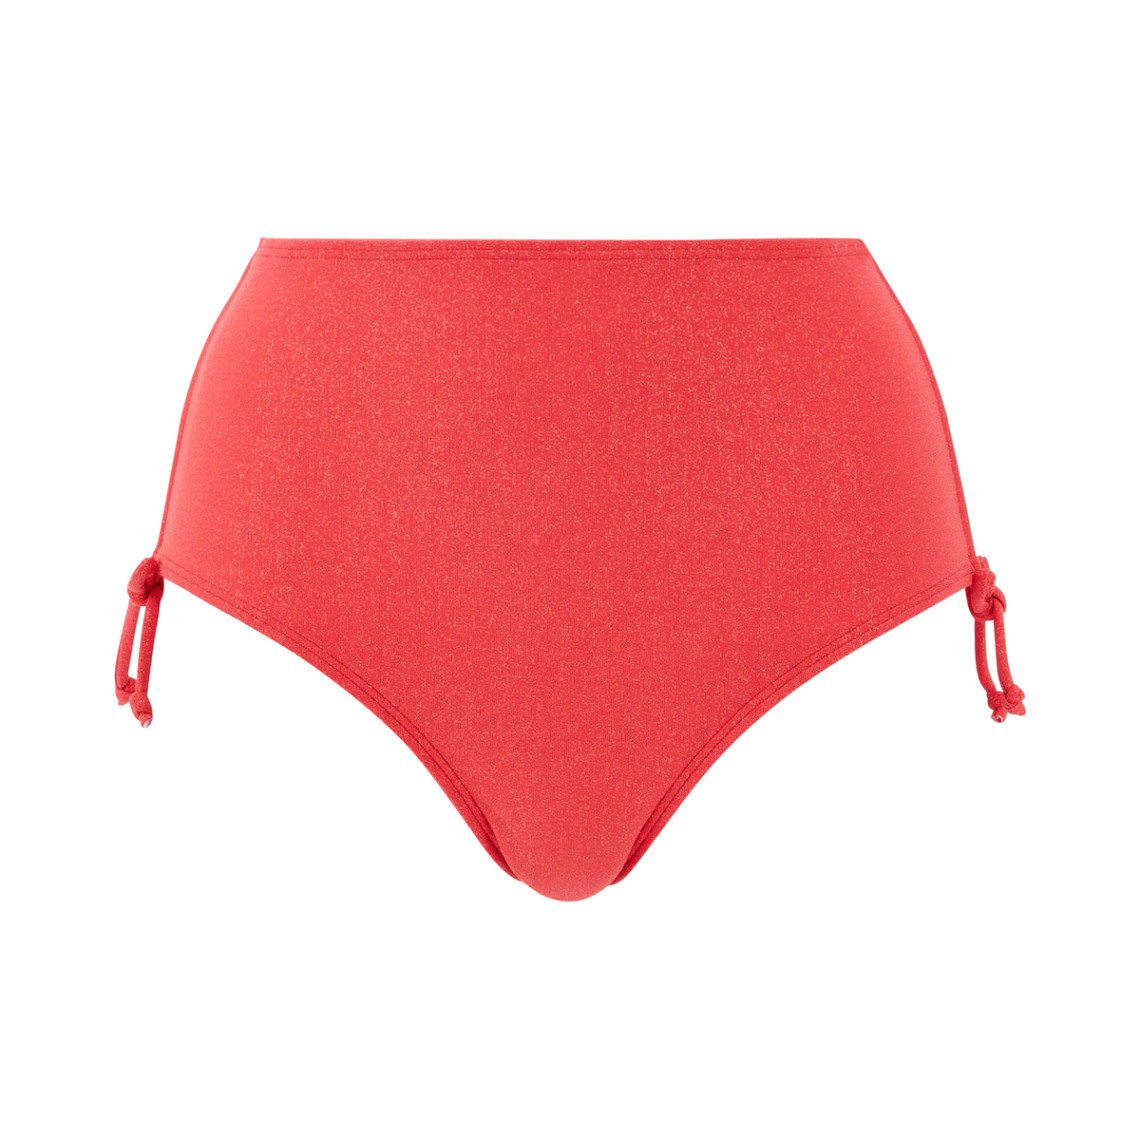 culotte de maillot de bain taille haute - rouge